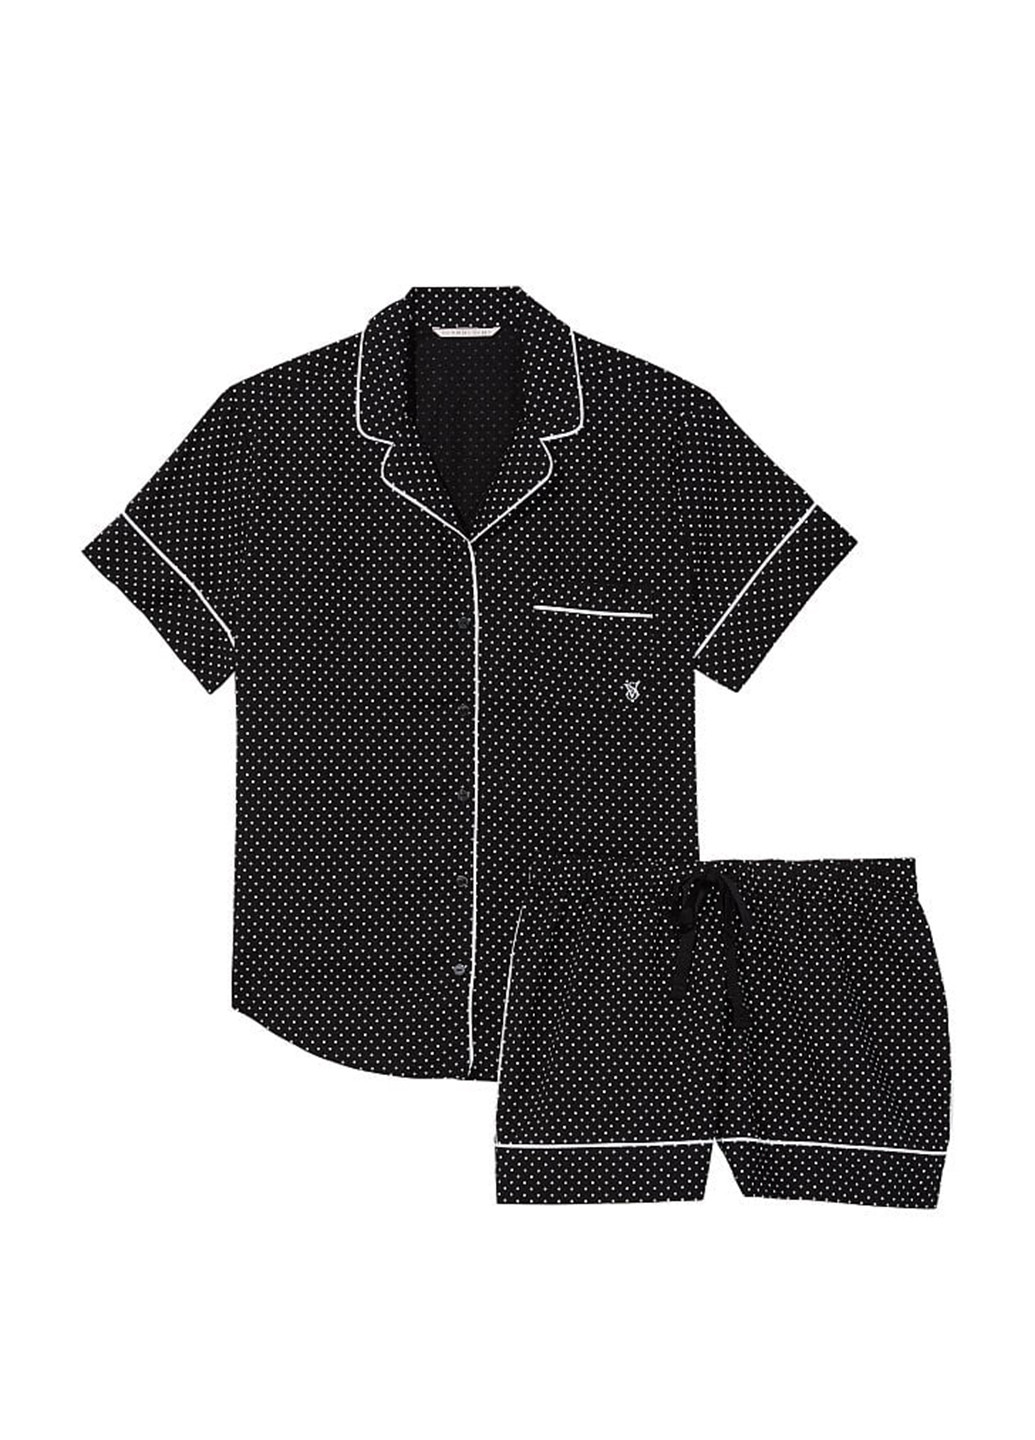 Черная всесезон пижама (рубаша, шорти) рубашка + шорты Victoria's Secret